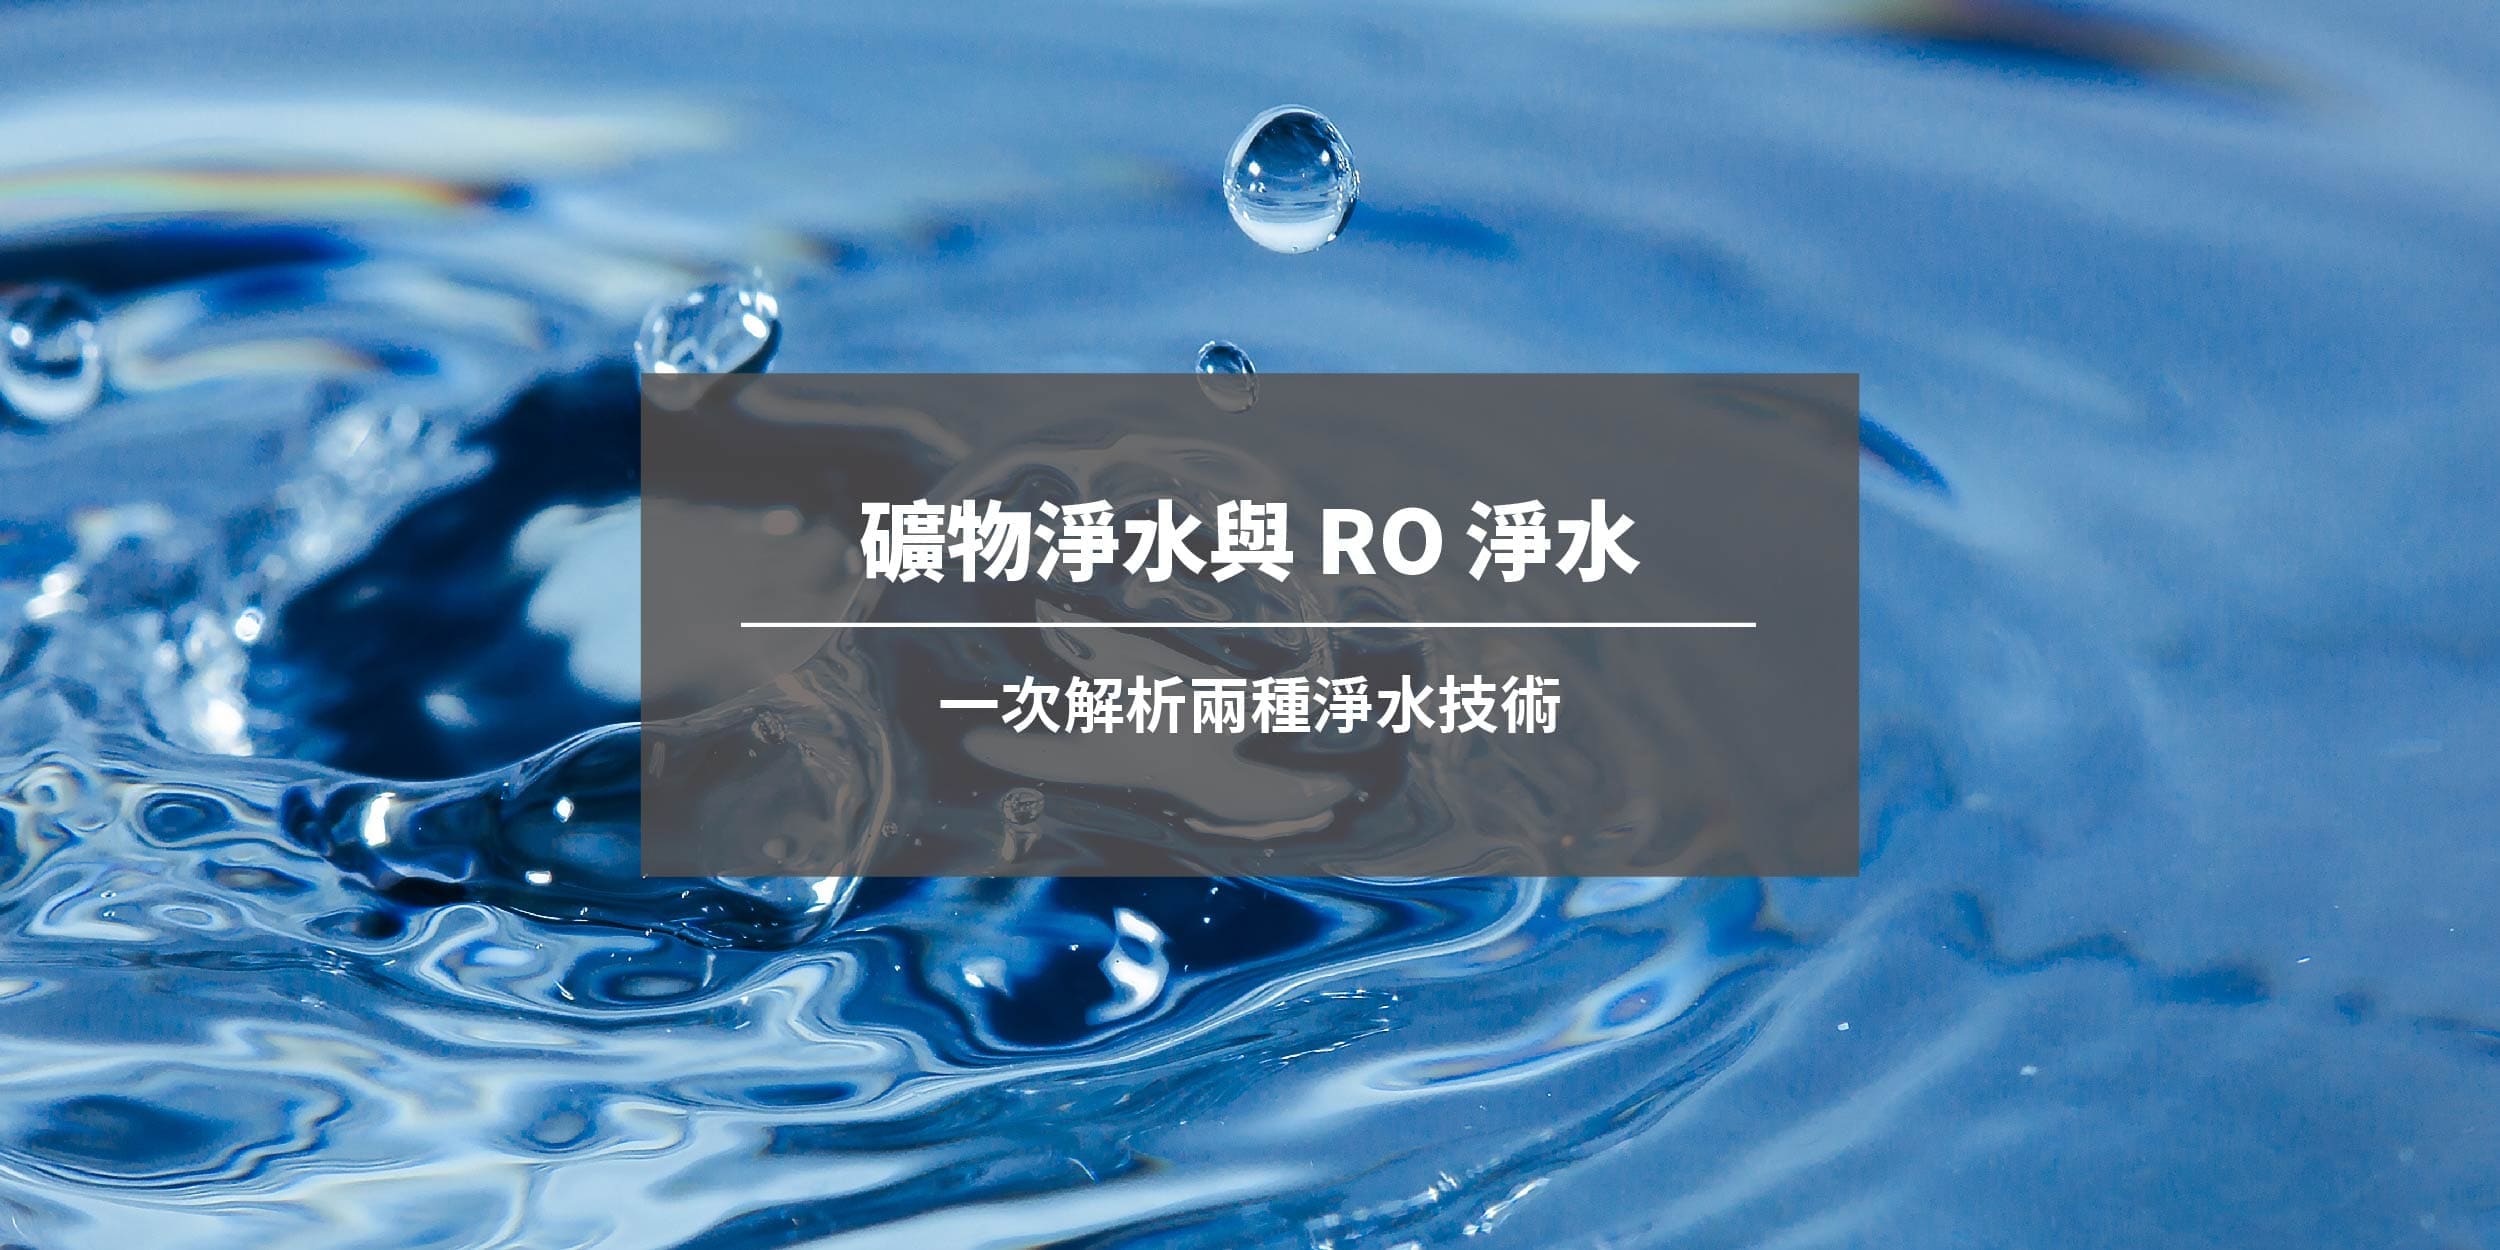 礦物淨水與 RO 淨水：一次解析兩種淨水技術